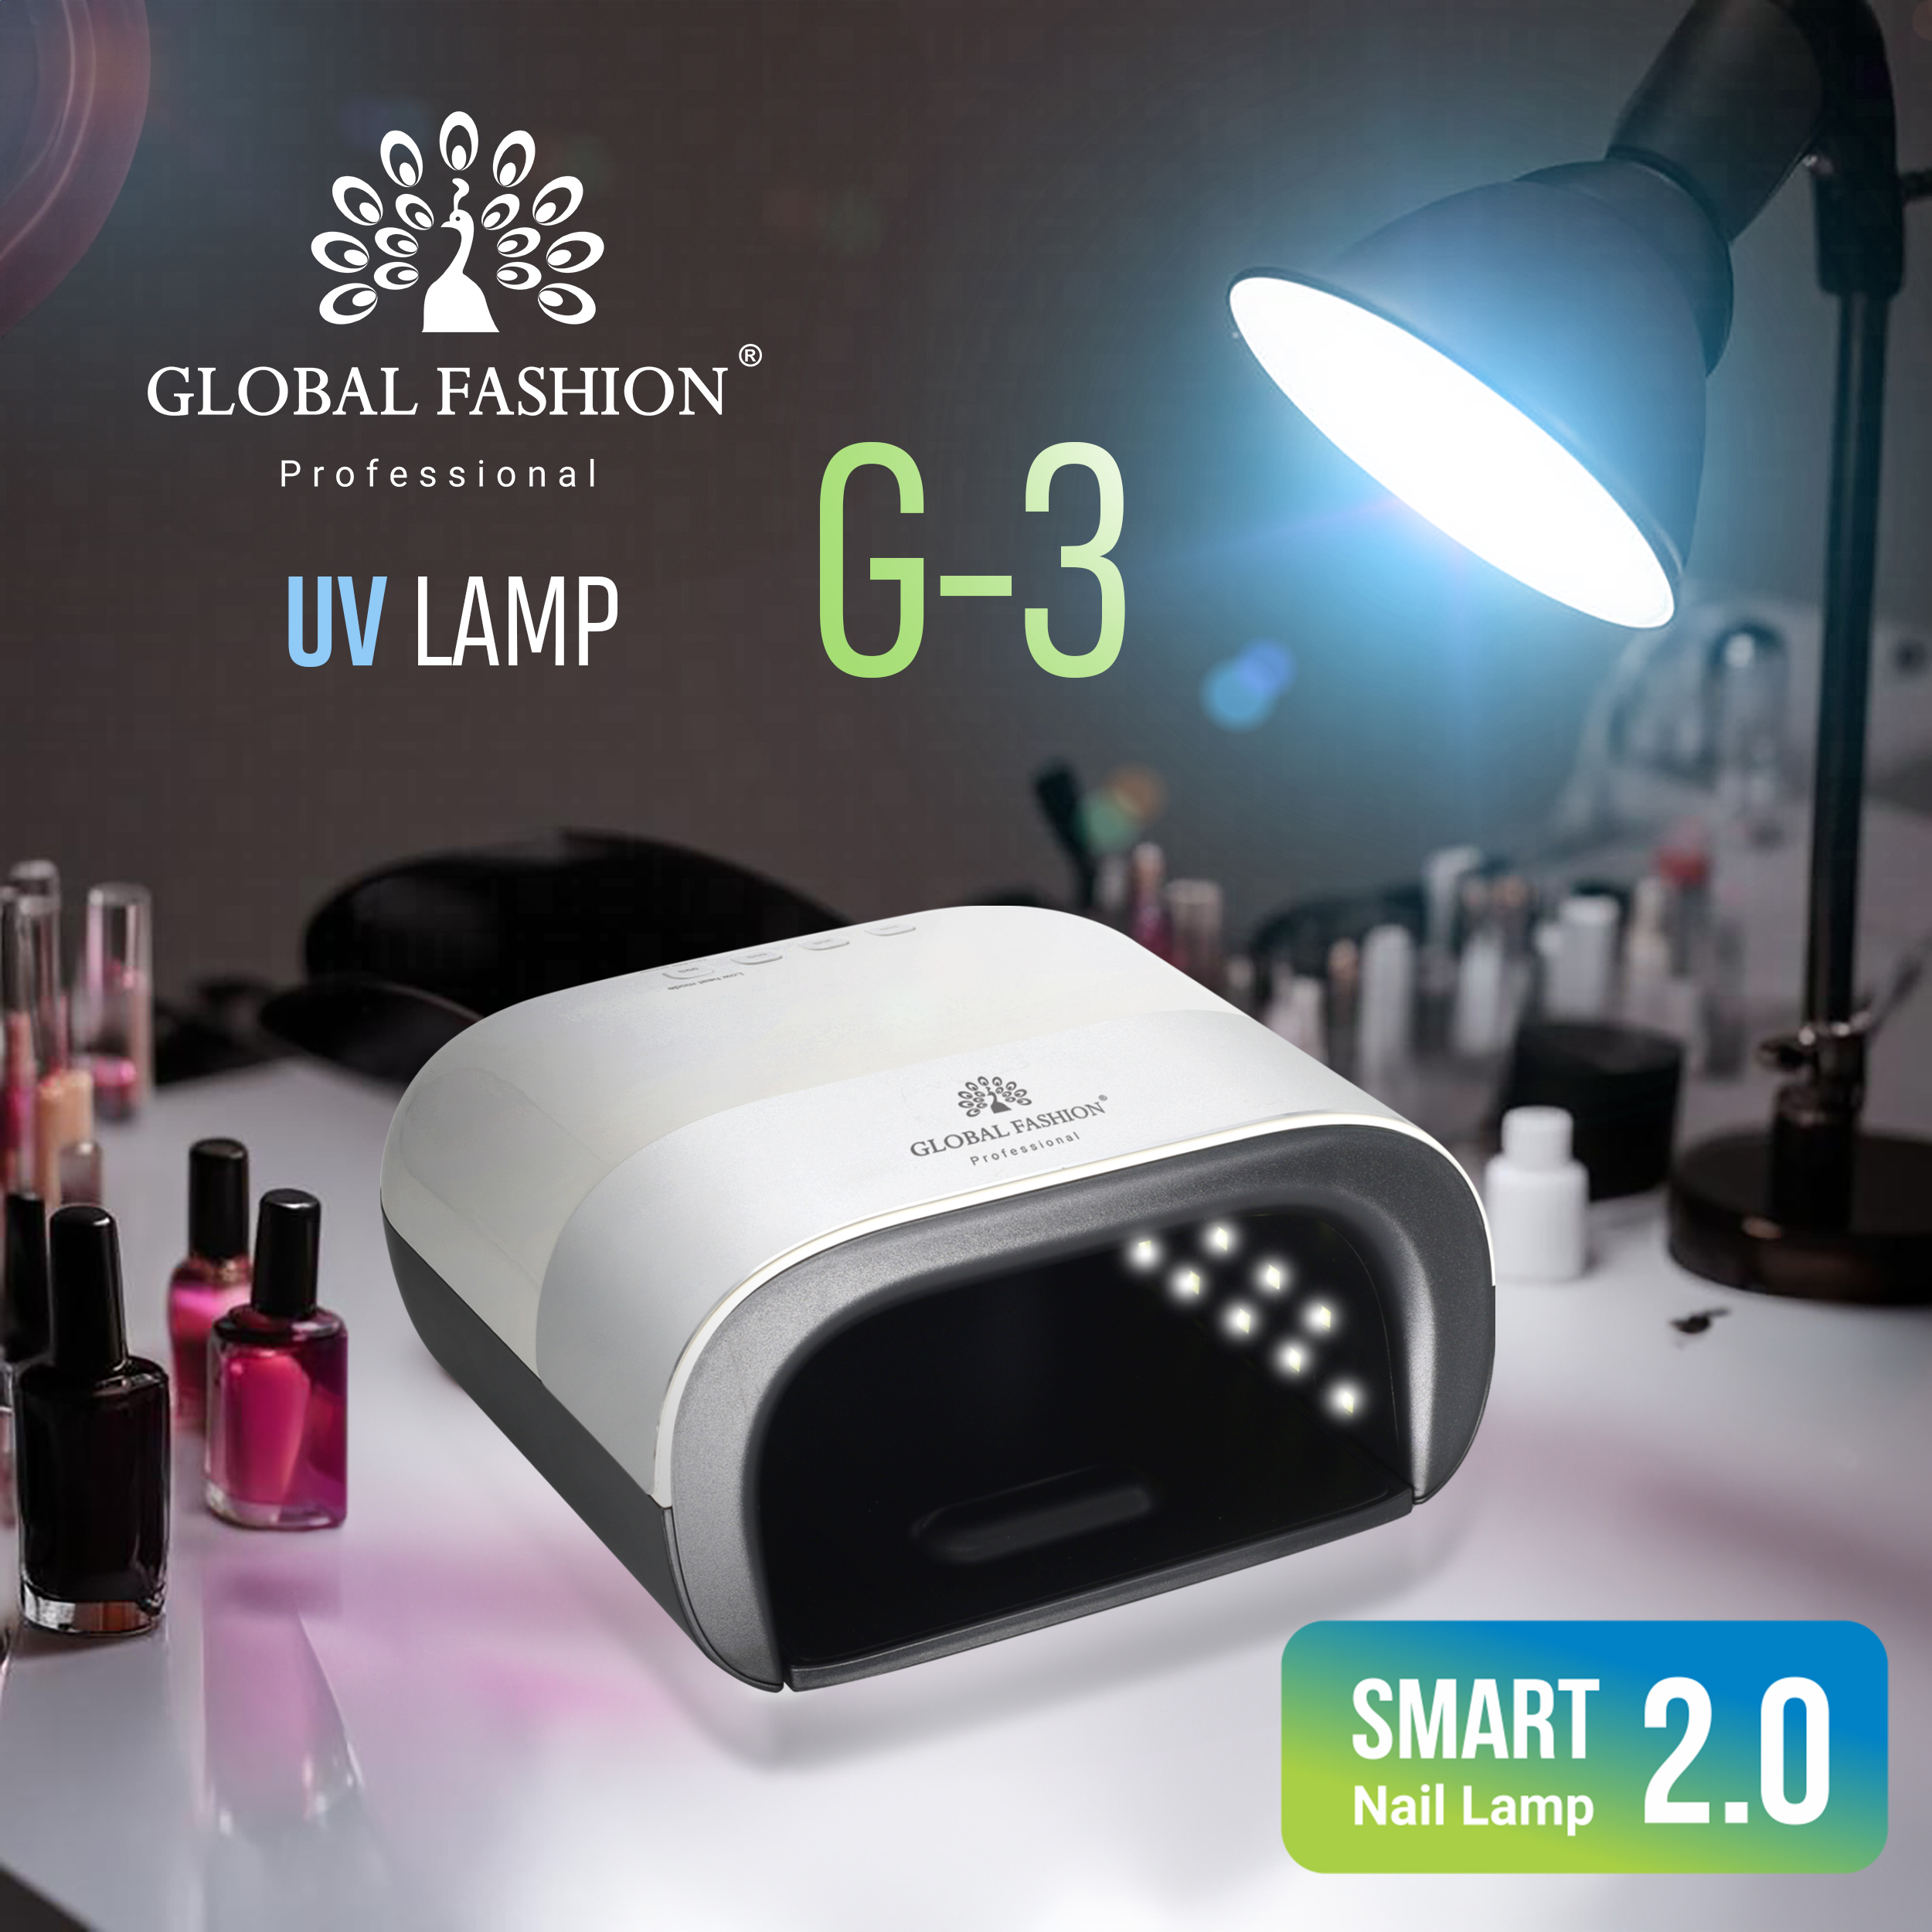 Лампа для сушіння нігтів LED/UV Professional Smart 2.0 48W G-3 Global Fashion: інноваційний продукт високої якості